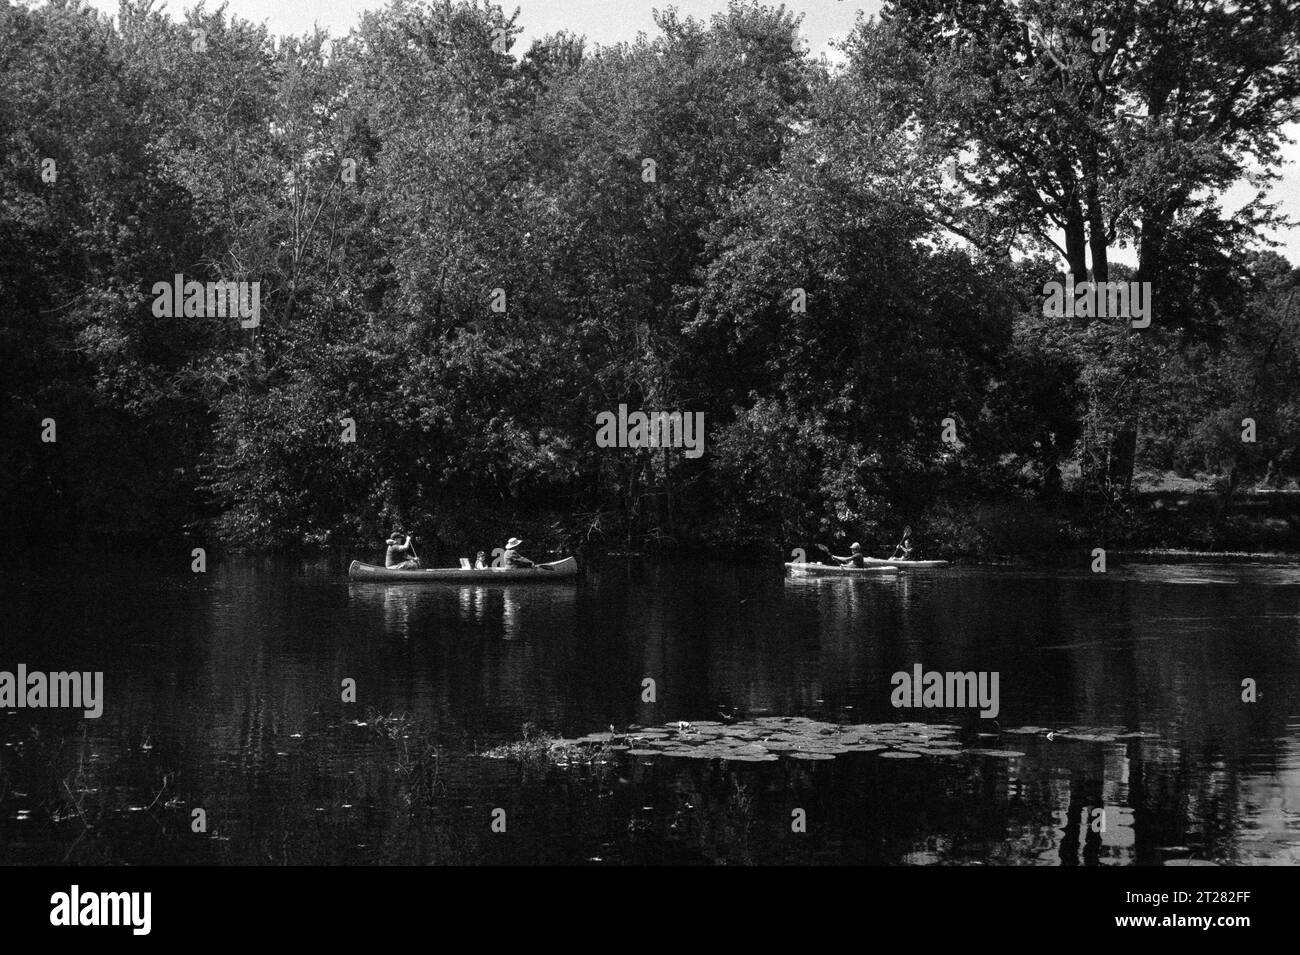 Les touristes font du bateau dans des canoës et des kayaks sur la rivière Concord par une journée ensoleillée d'été. L'image a été capturée sur film analogique noir et blanc. Banque D'Images